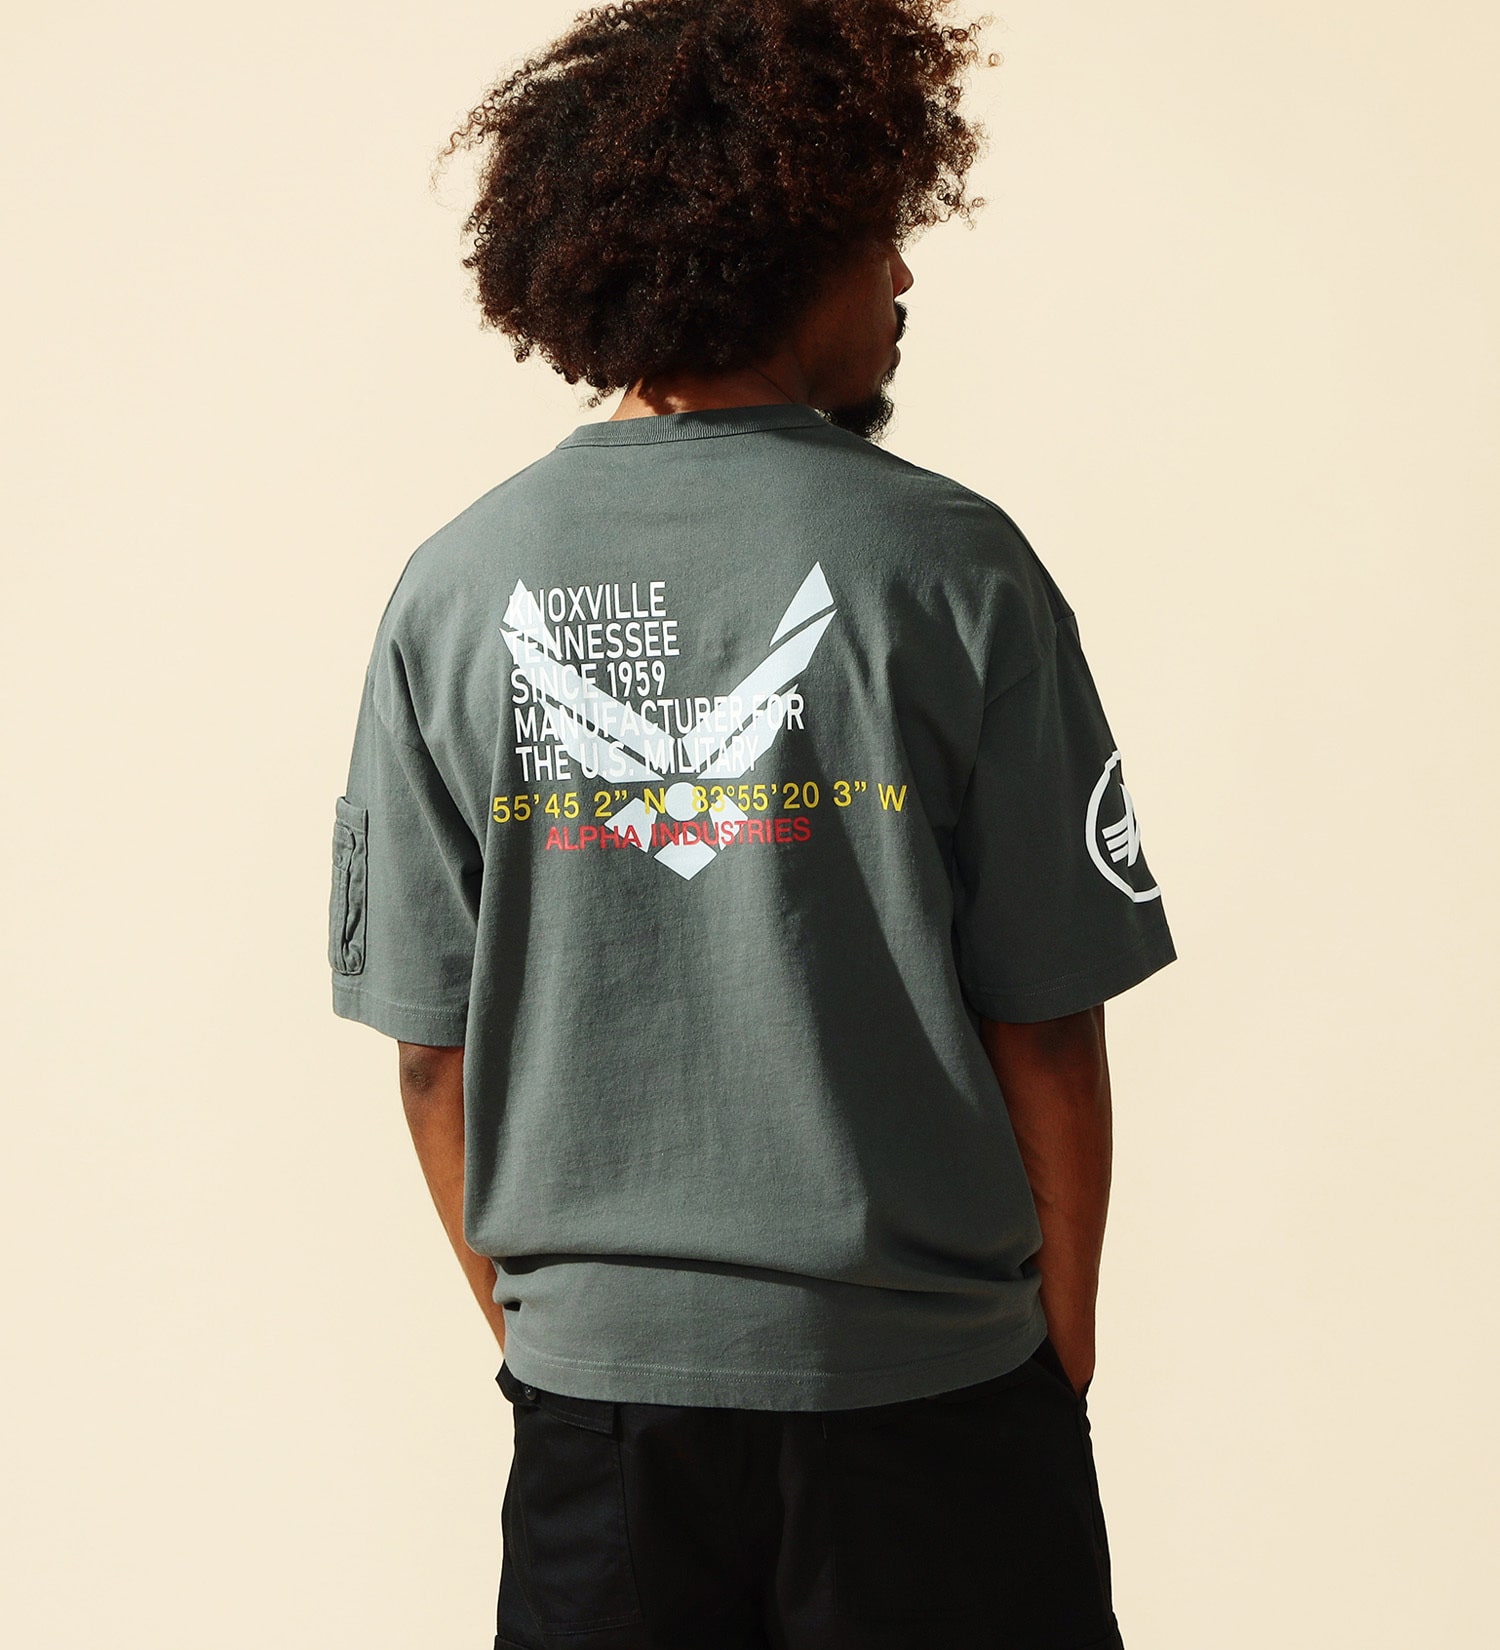 ALPHA(アルファ)のUSAF パッチプリントTシャツ 半袖|トップス/Tシャツ/カットソー/メンズ|グレー